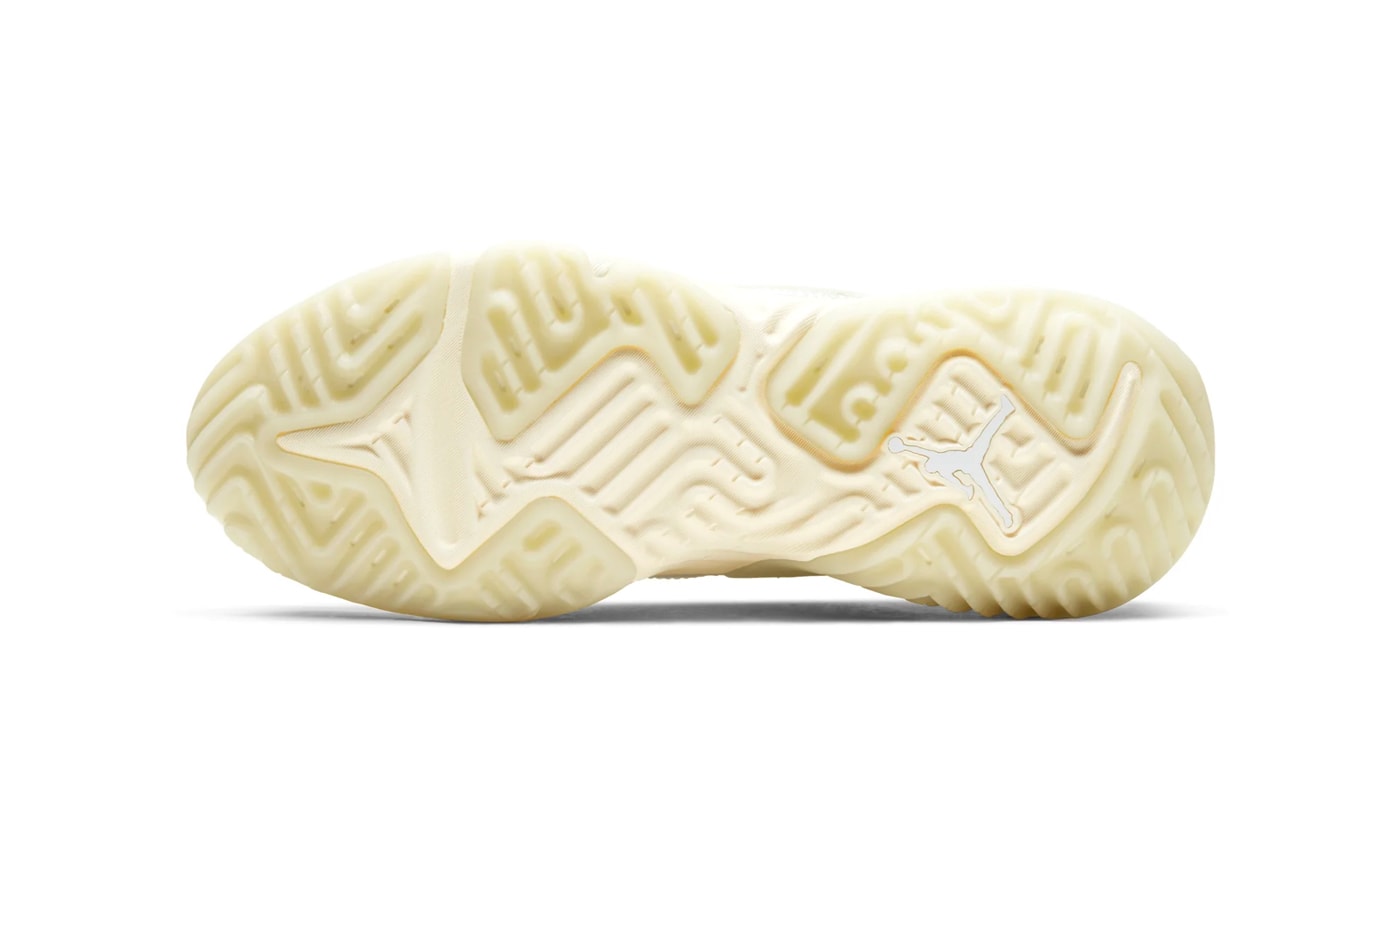 Nike Jordan brand Delta SP "Sail" Release Info React TPU upper drop date price details 000 23 cream blue mesh cork insole 